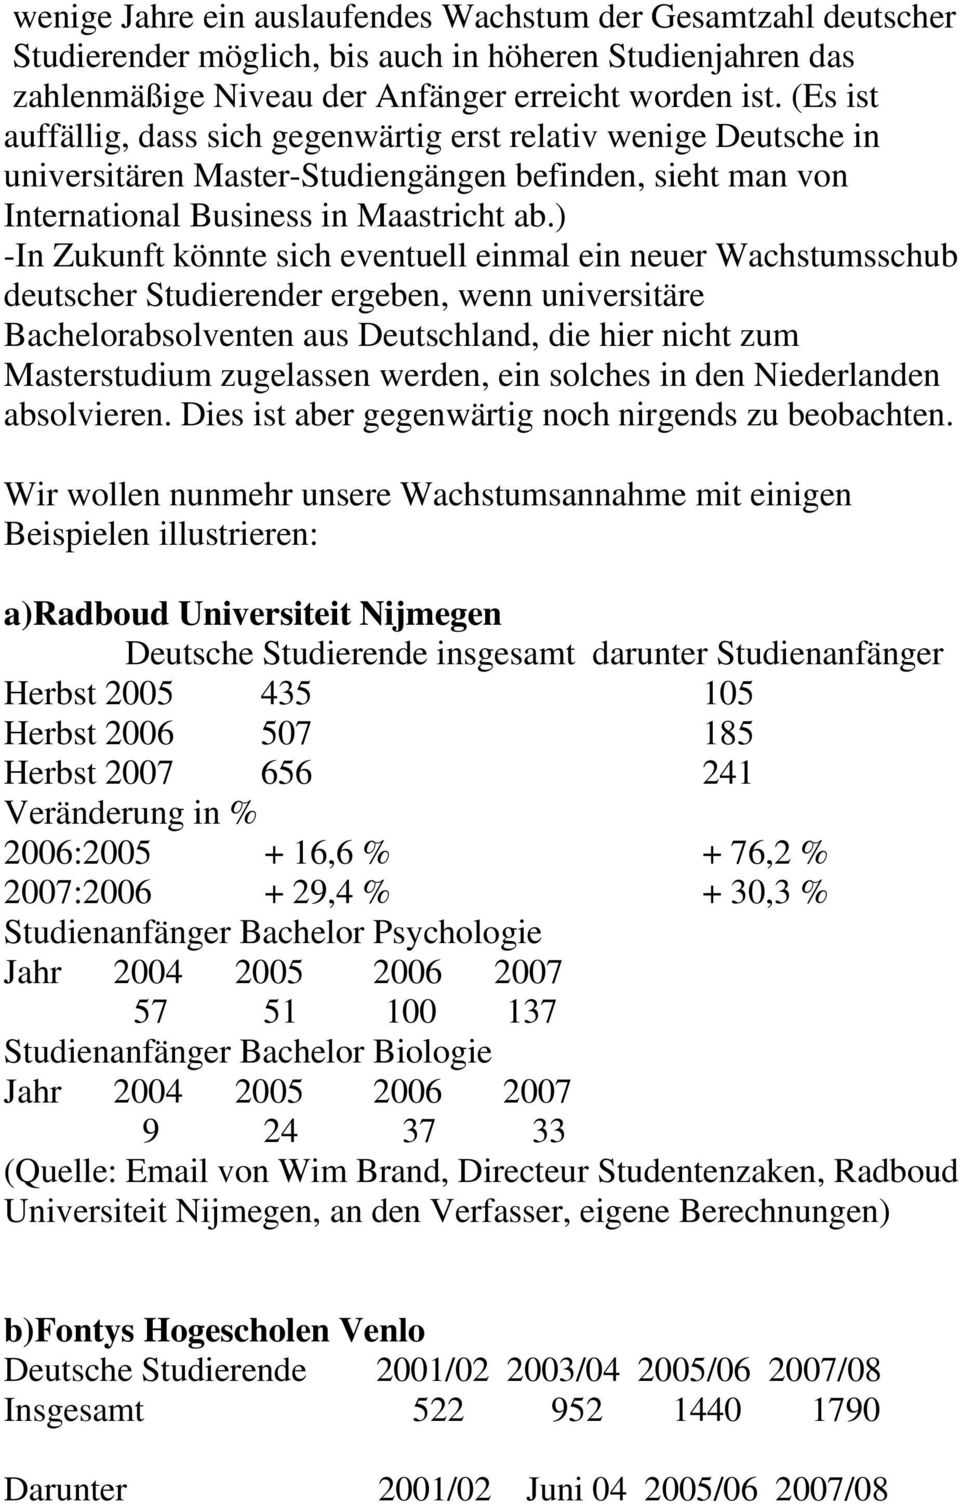 ) -In Zukunft könnte sich eventuell einmal ein neuer Wachstumsschub deutscher Studierender ergeben, wenn universitäre Bachelorabsolventen aus Deutschland, die hier nicht zum Masterstudium zugelassen